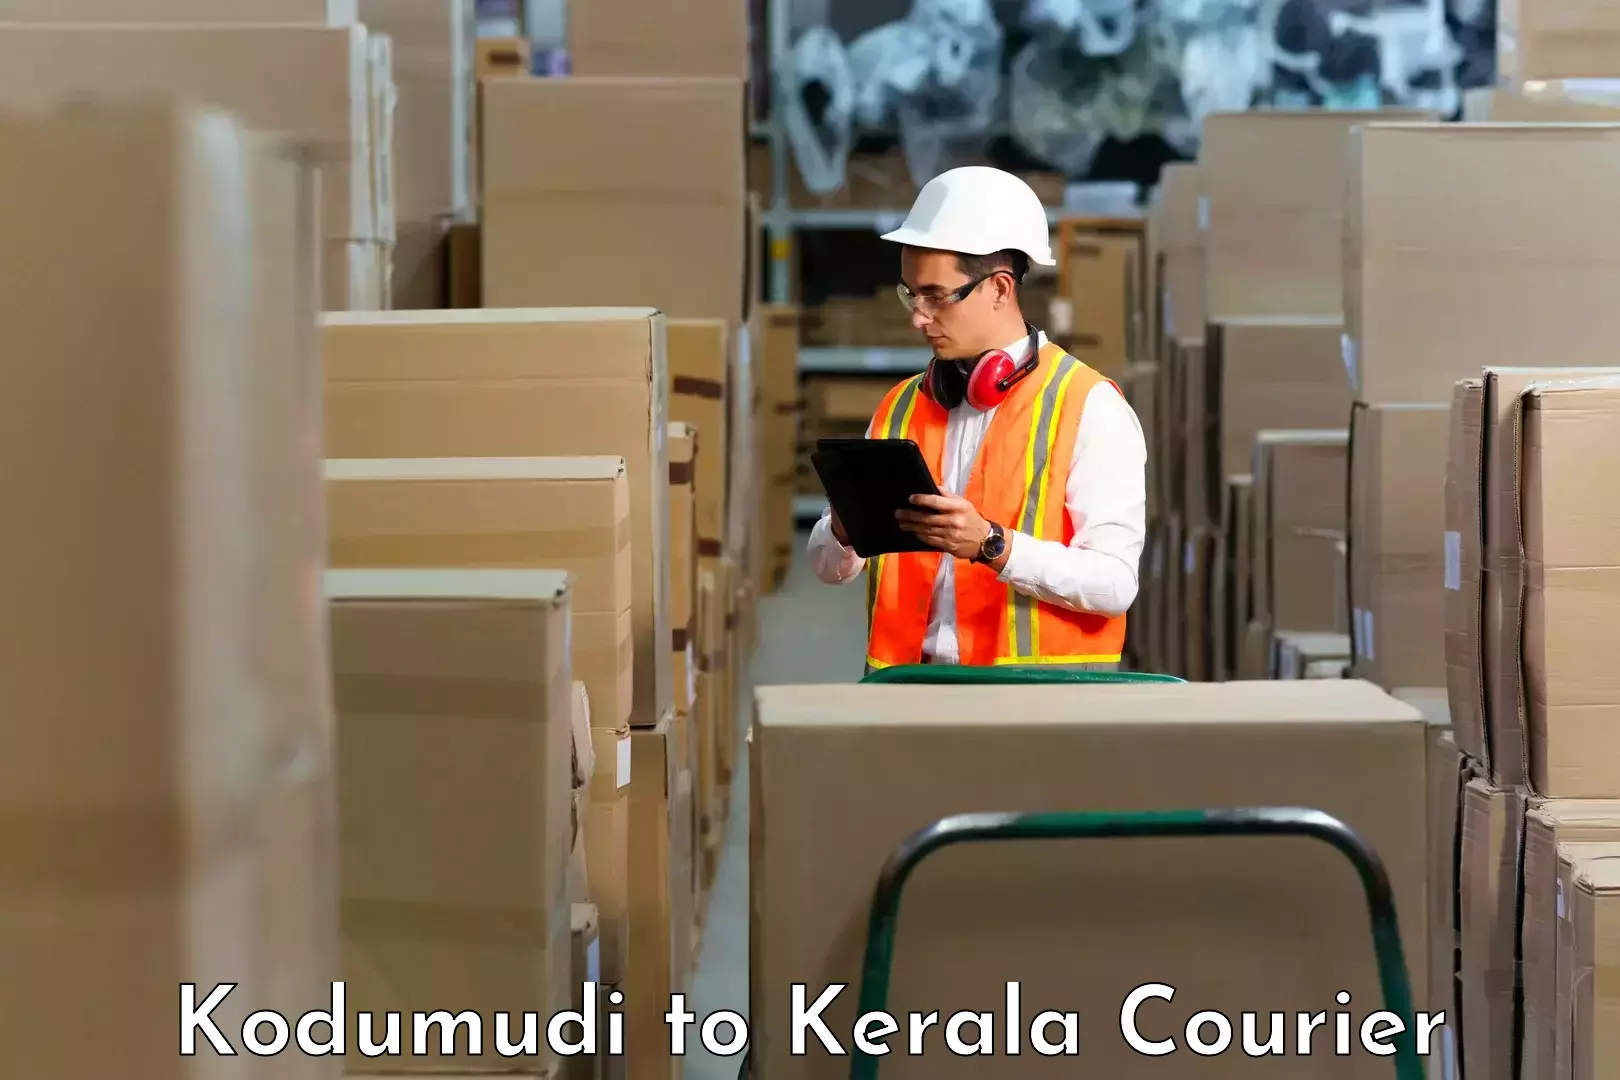 Express mail solutions Kodumudi to Chungathara